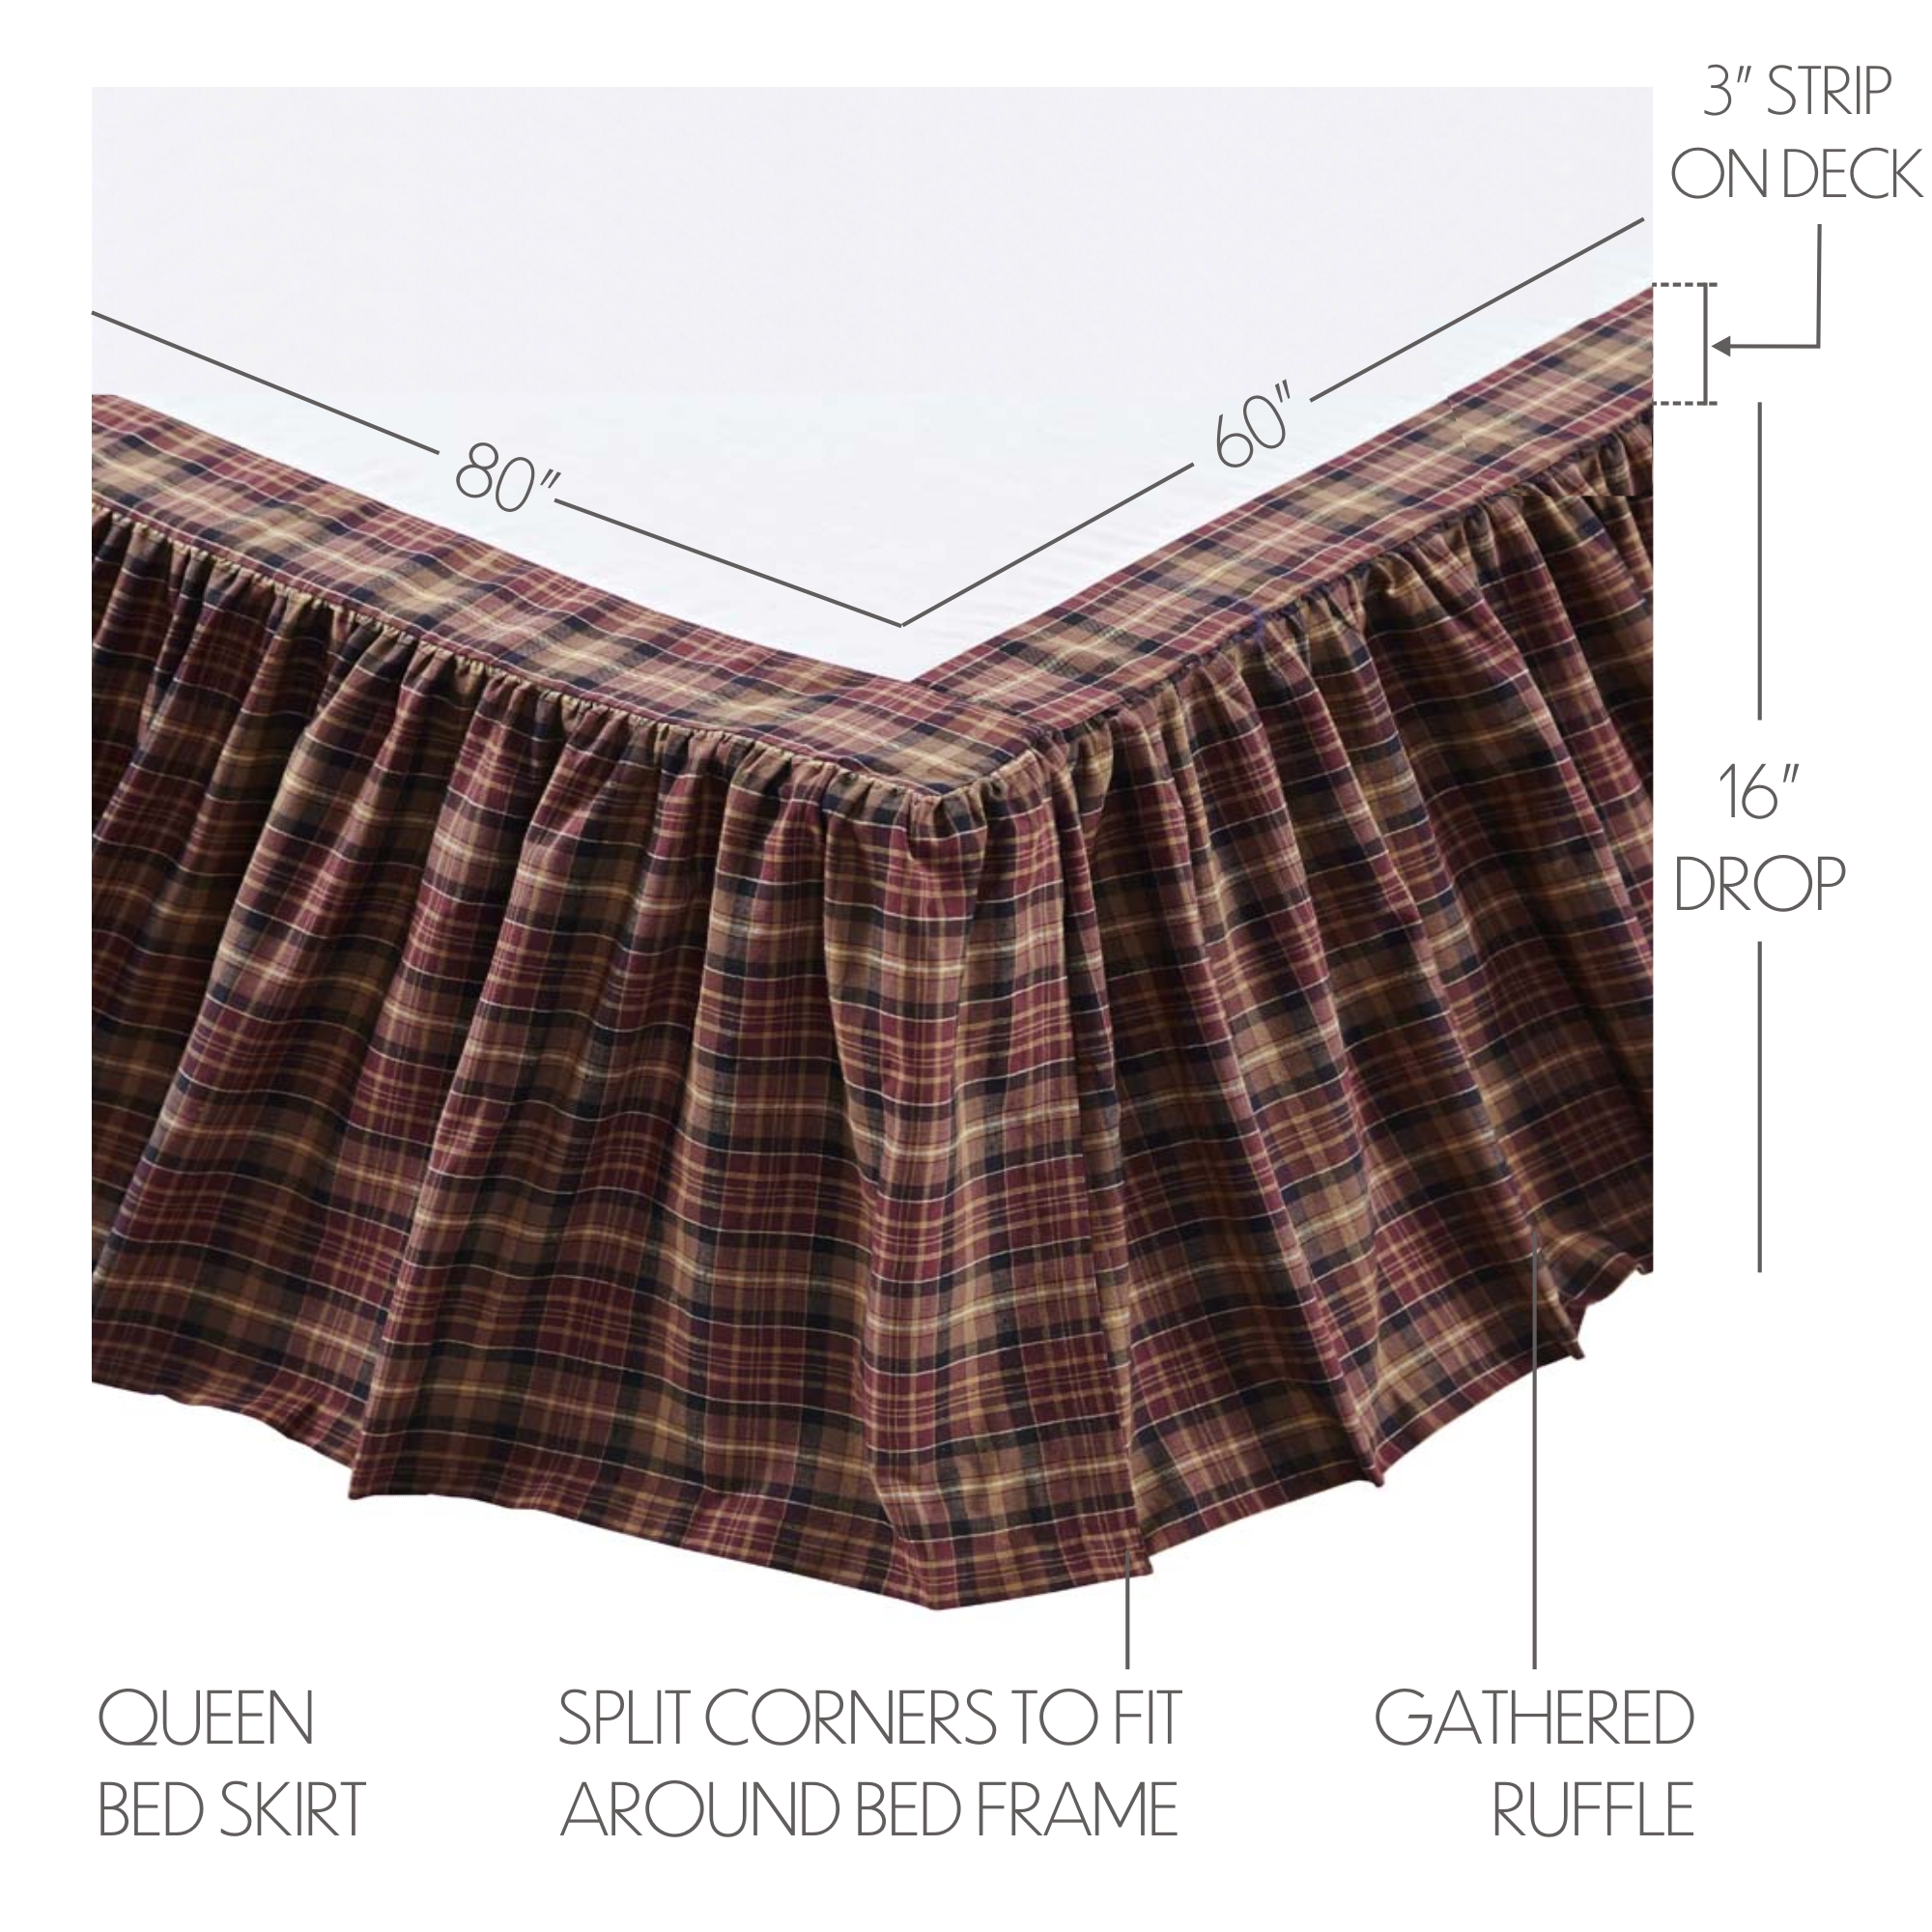 19968-Abilene-Star-Queen-Bed-Skirt-60x80x16-image-1